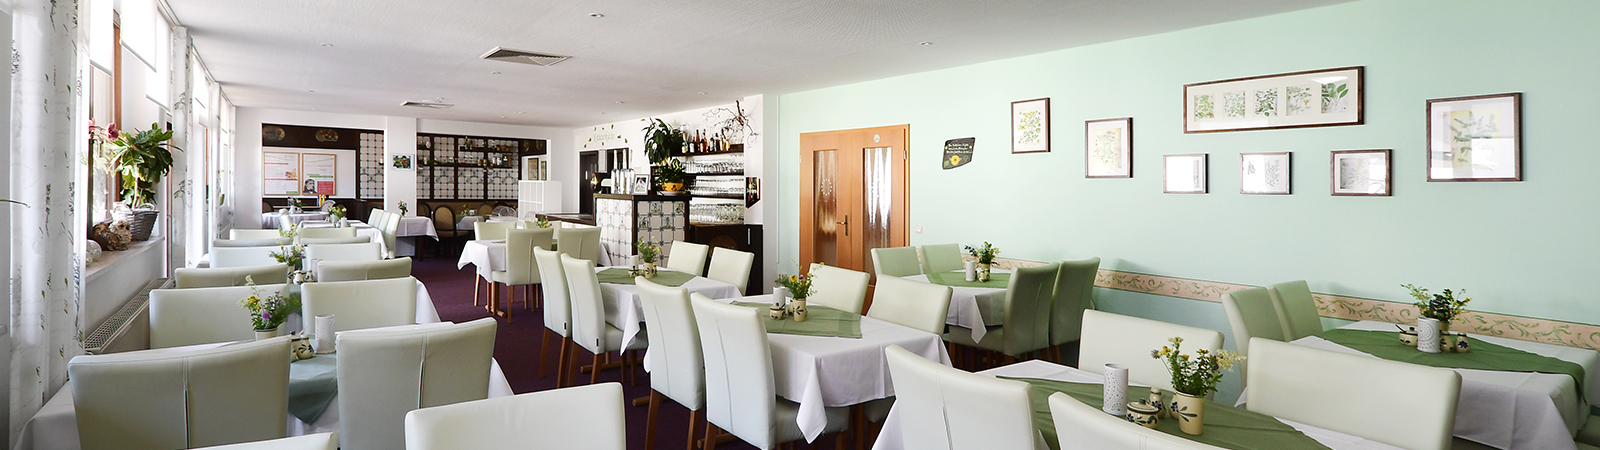 Hotel & Restaurant im Kräutergarten - Events